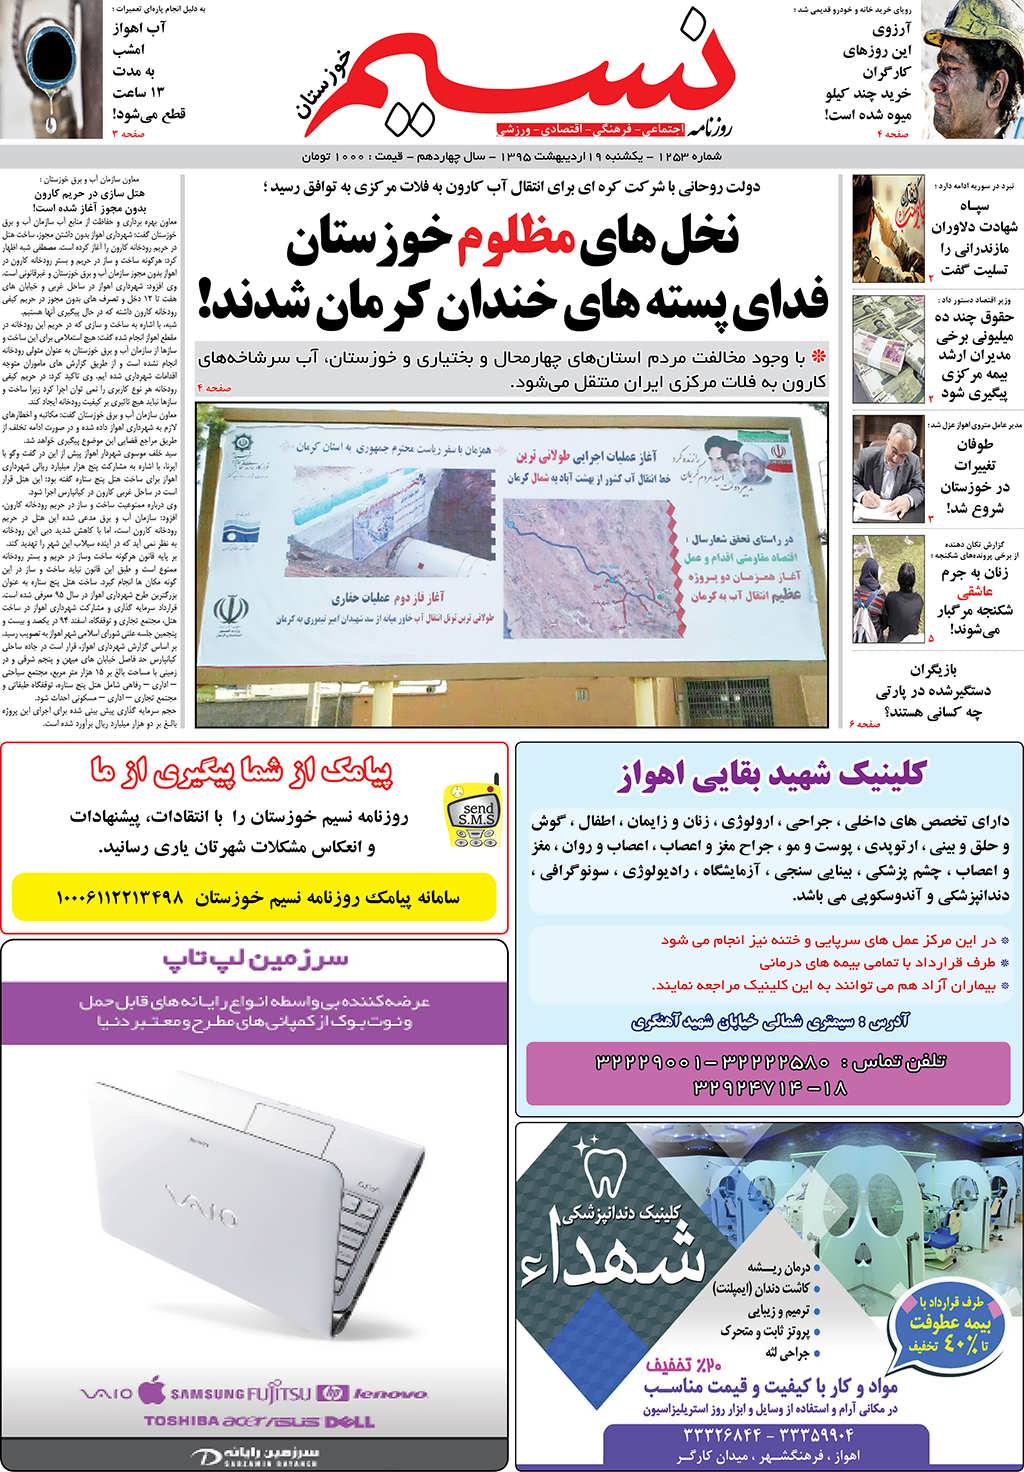 صفحه اصلی روزنامه نسیم شماره 1253